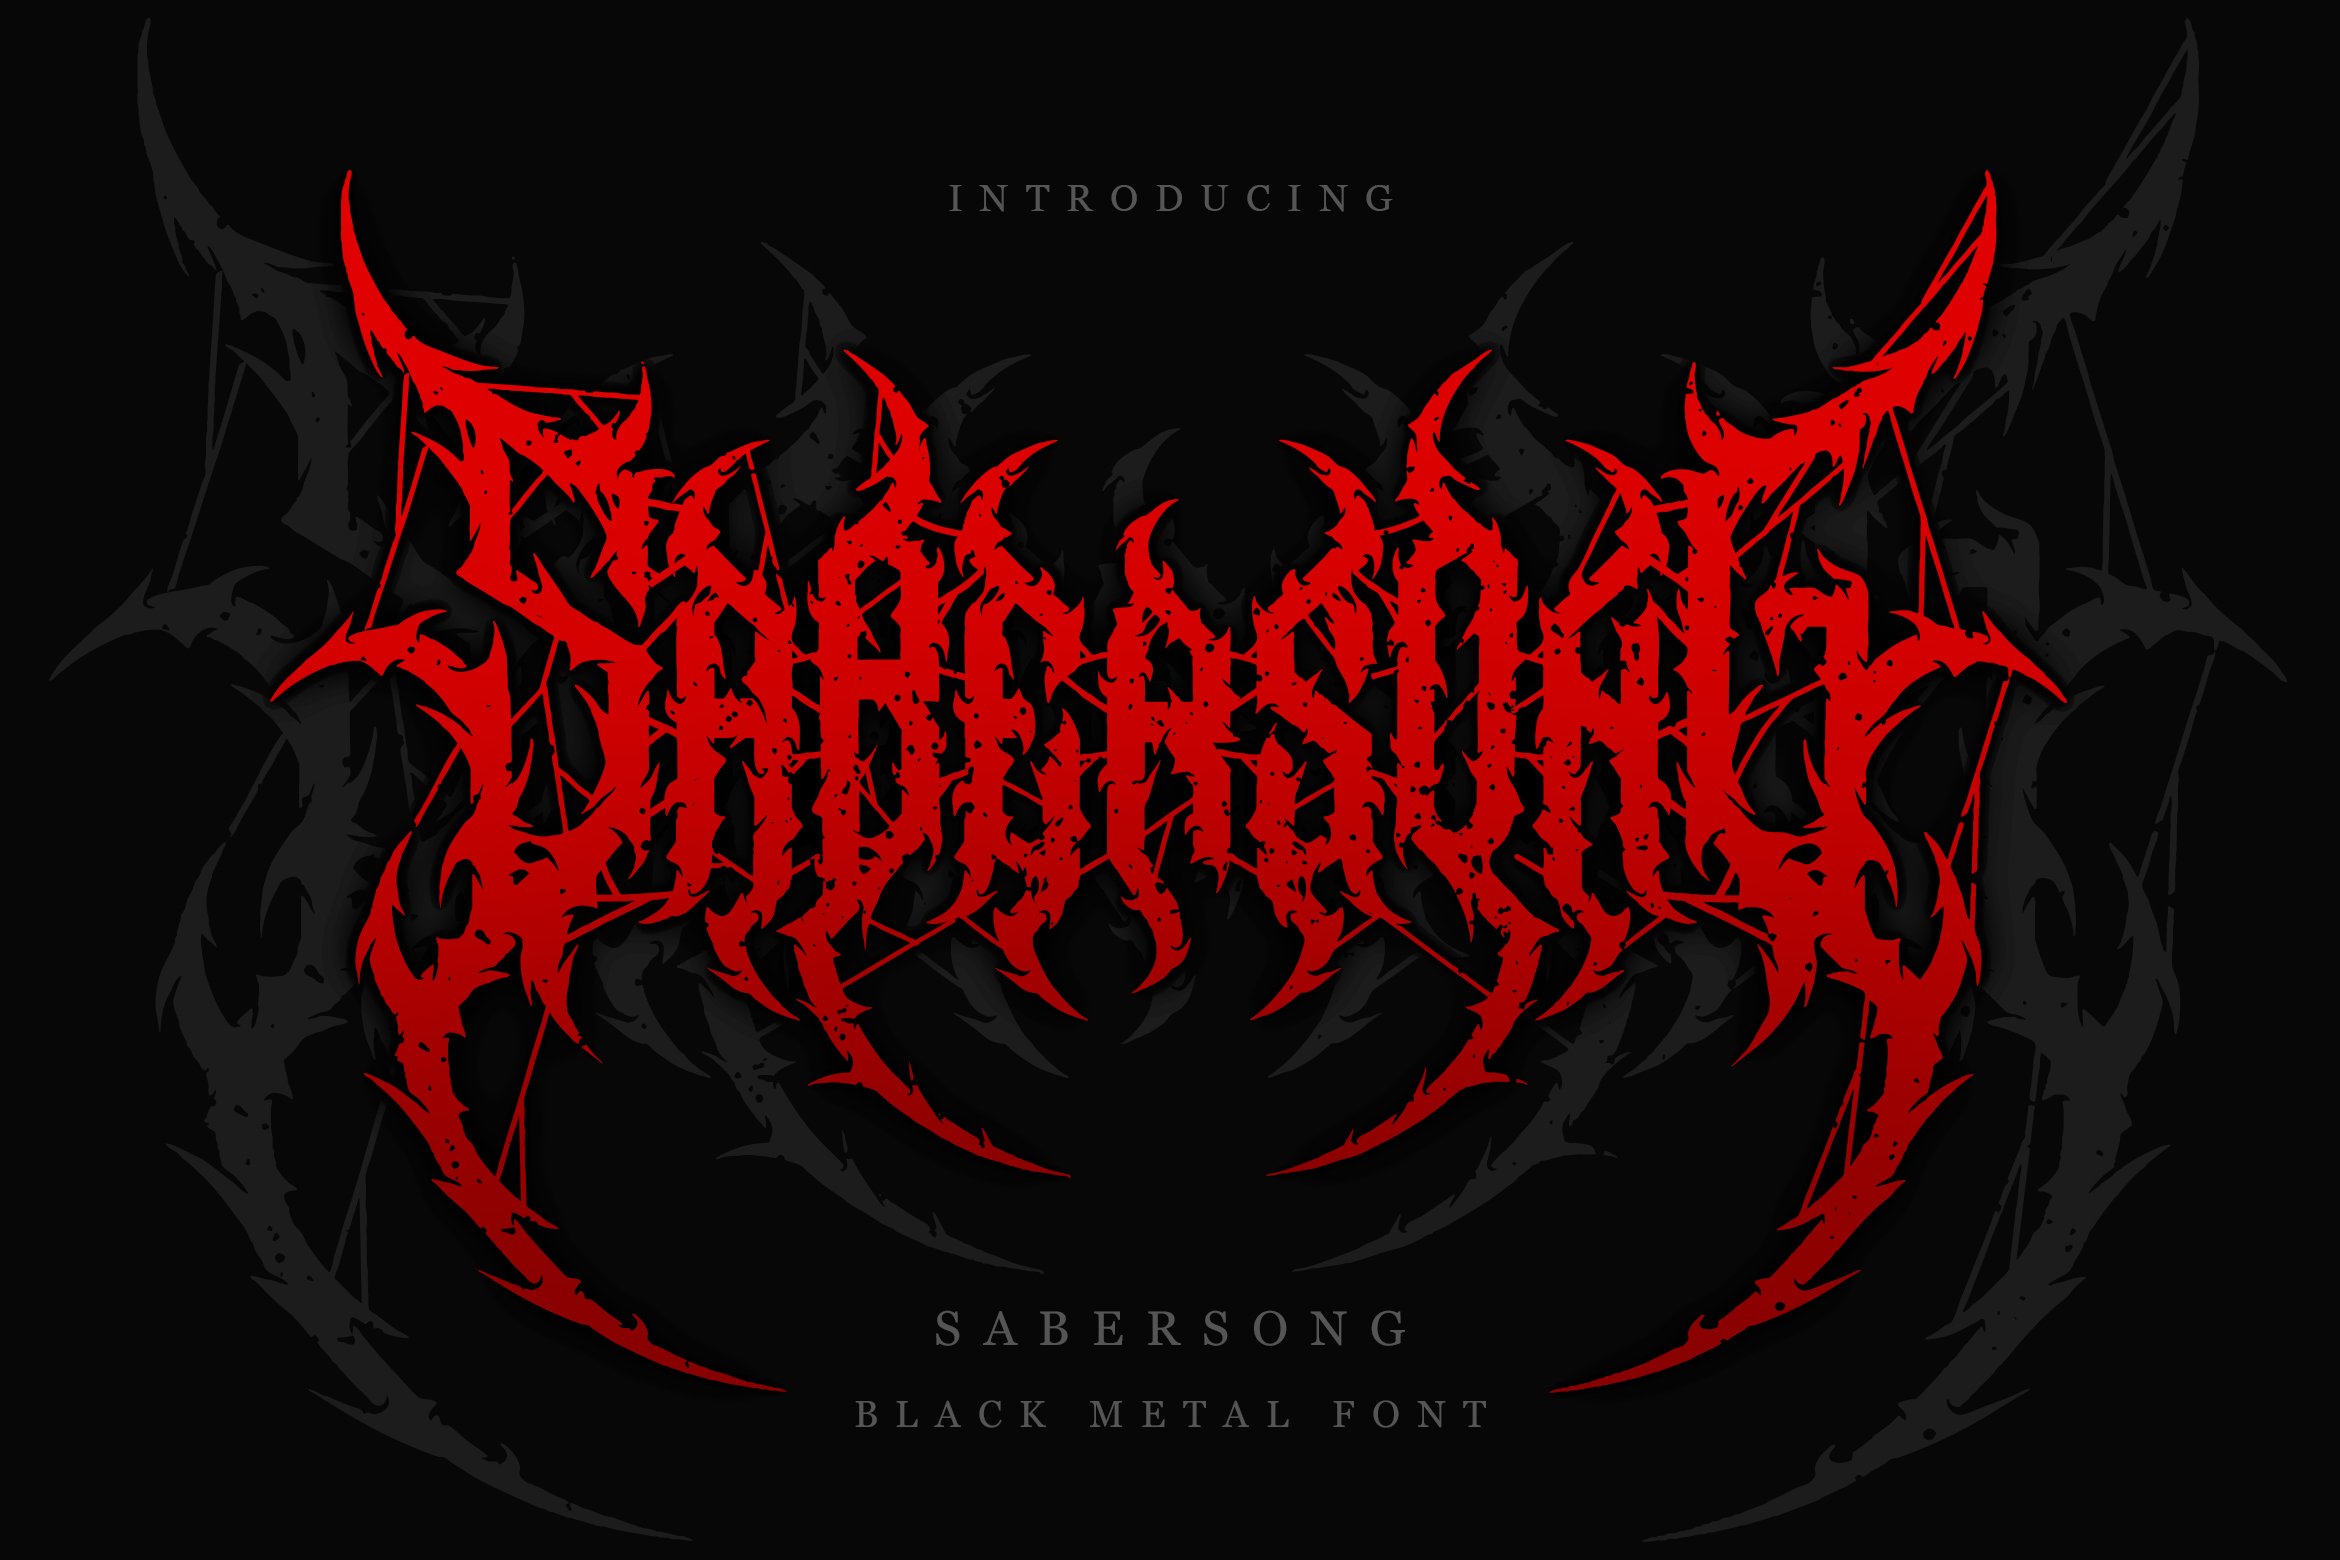 W9Ek5zUm Sabersong Black Metal Font Vol 3 